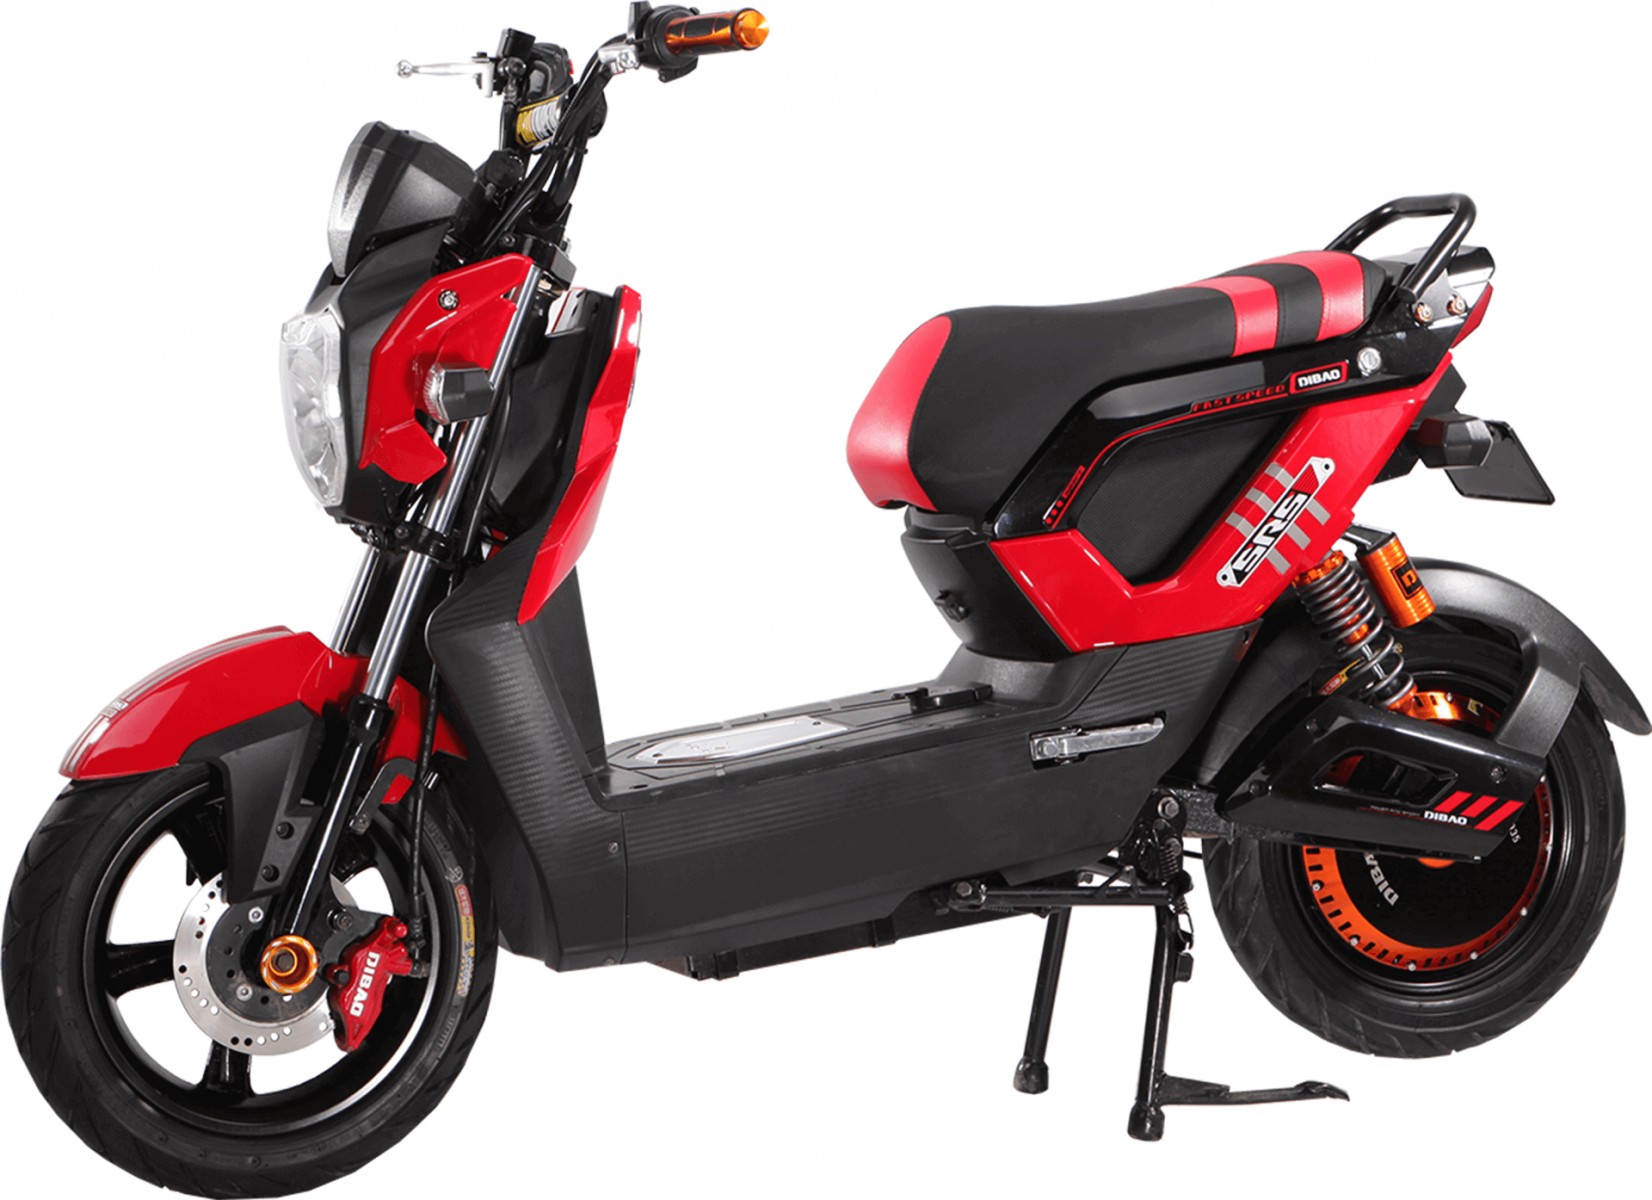 Zoomer Dibao là mẫu xe máy điện đáng để các bạn trẻ sử dụng nhất